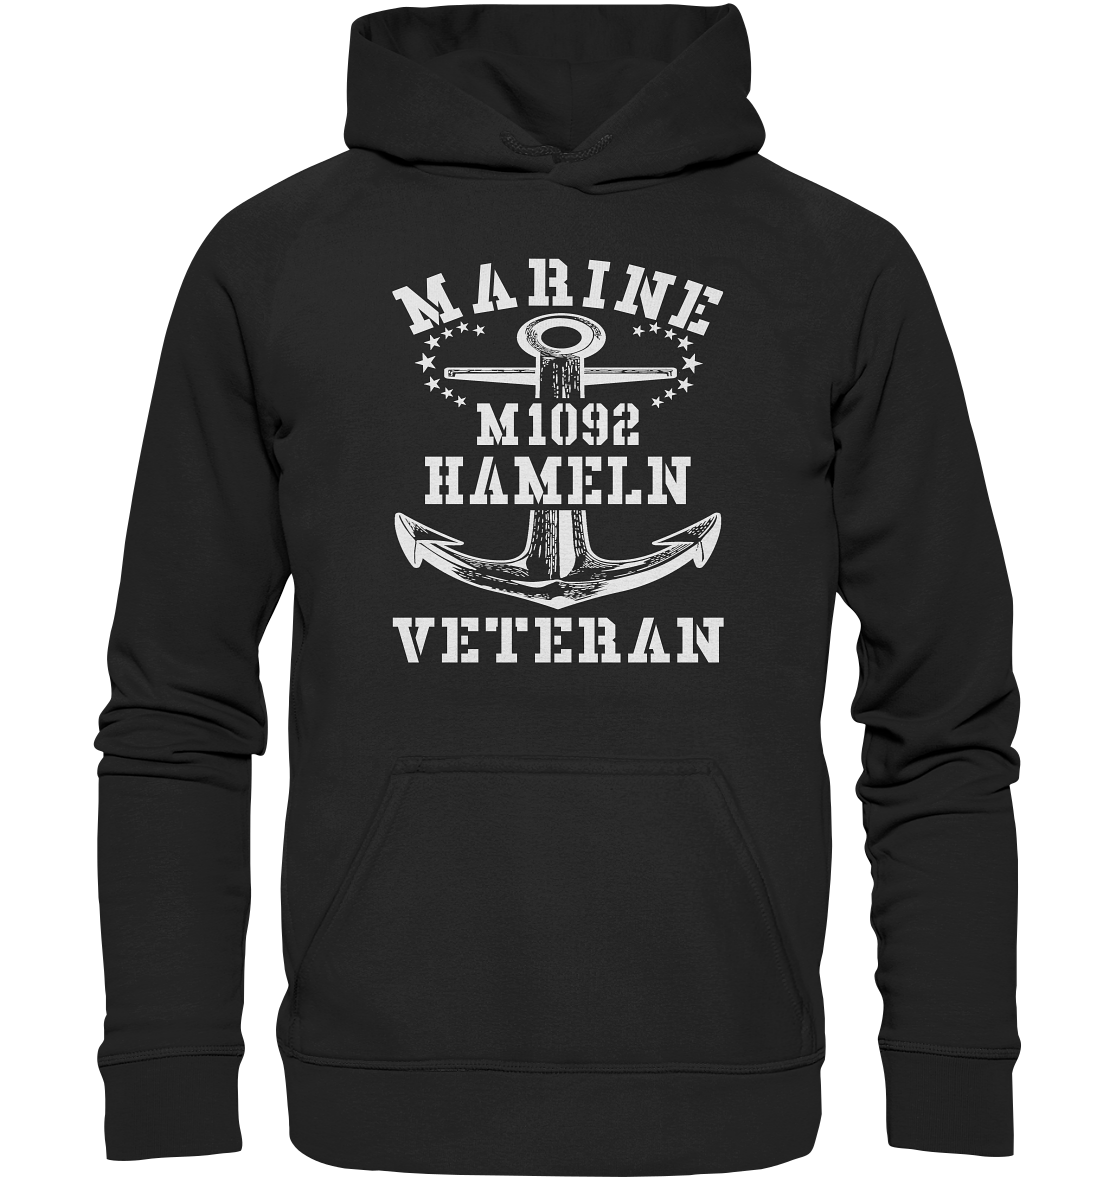 M1092 HAMELN Marine Veteran - Basic Unisex Hoodie XL